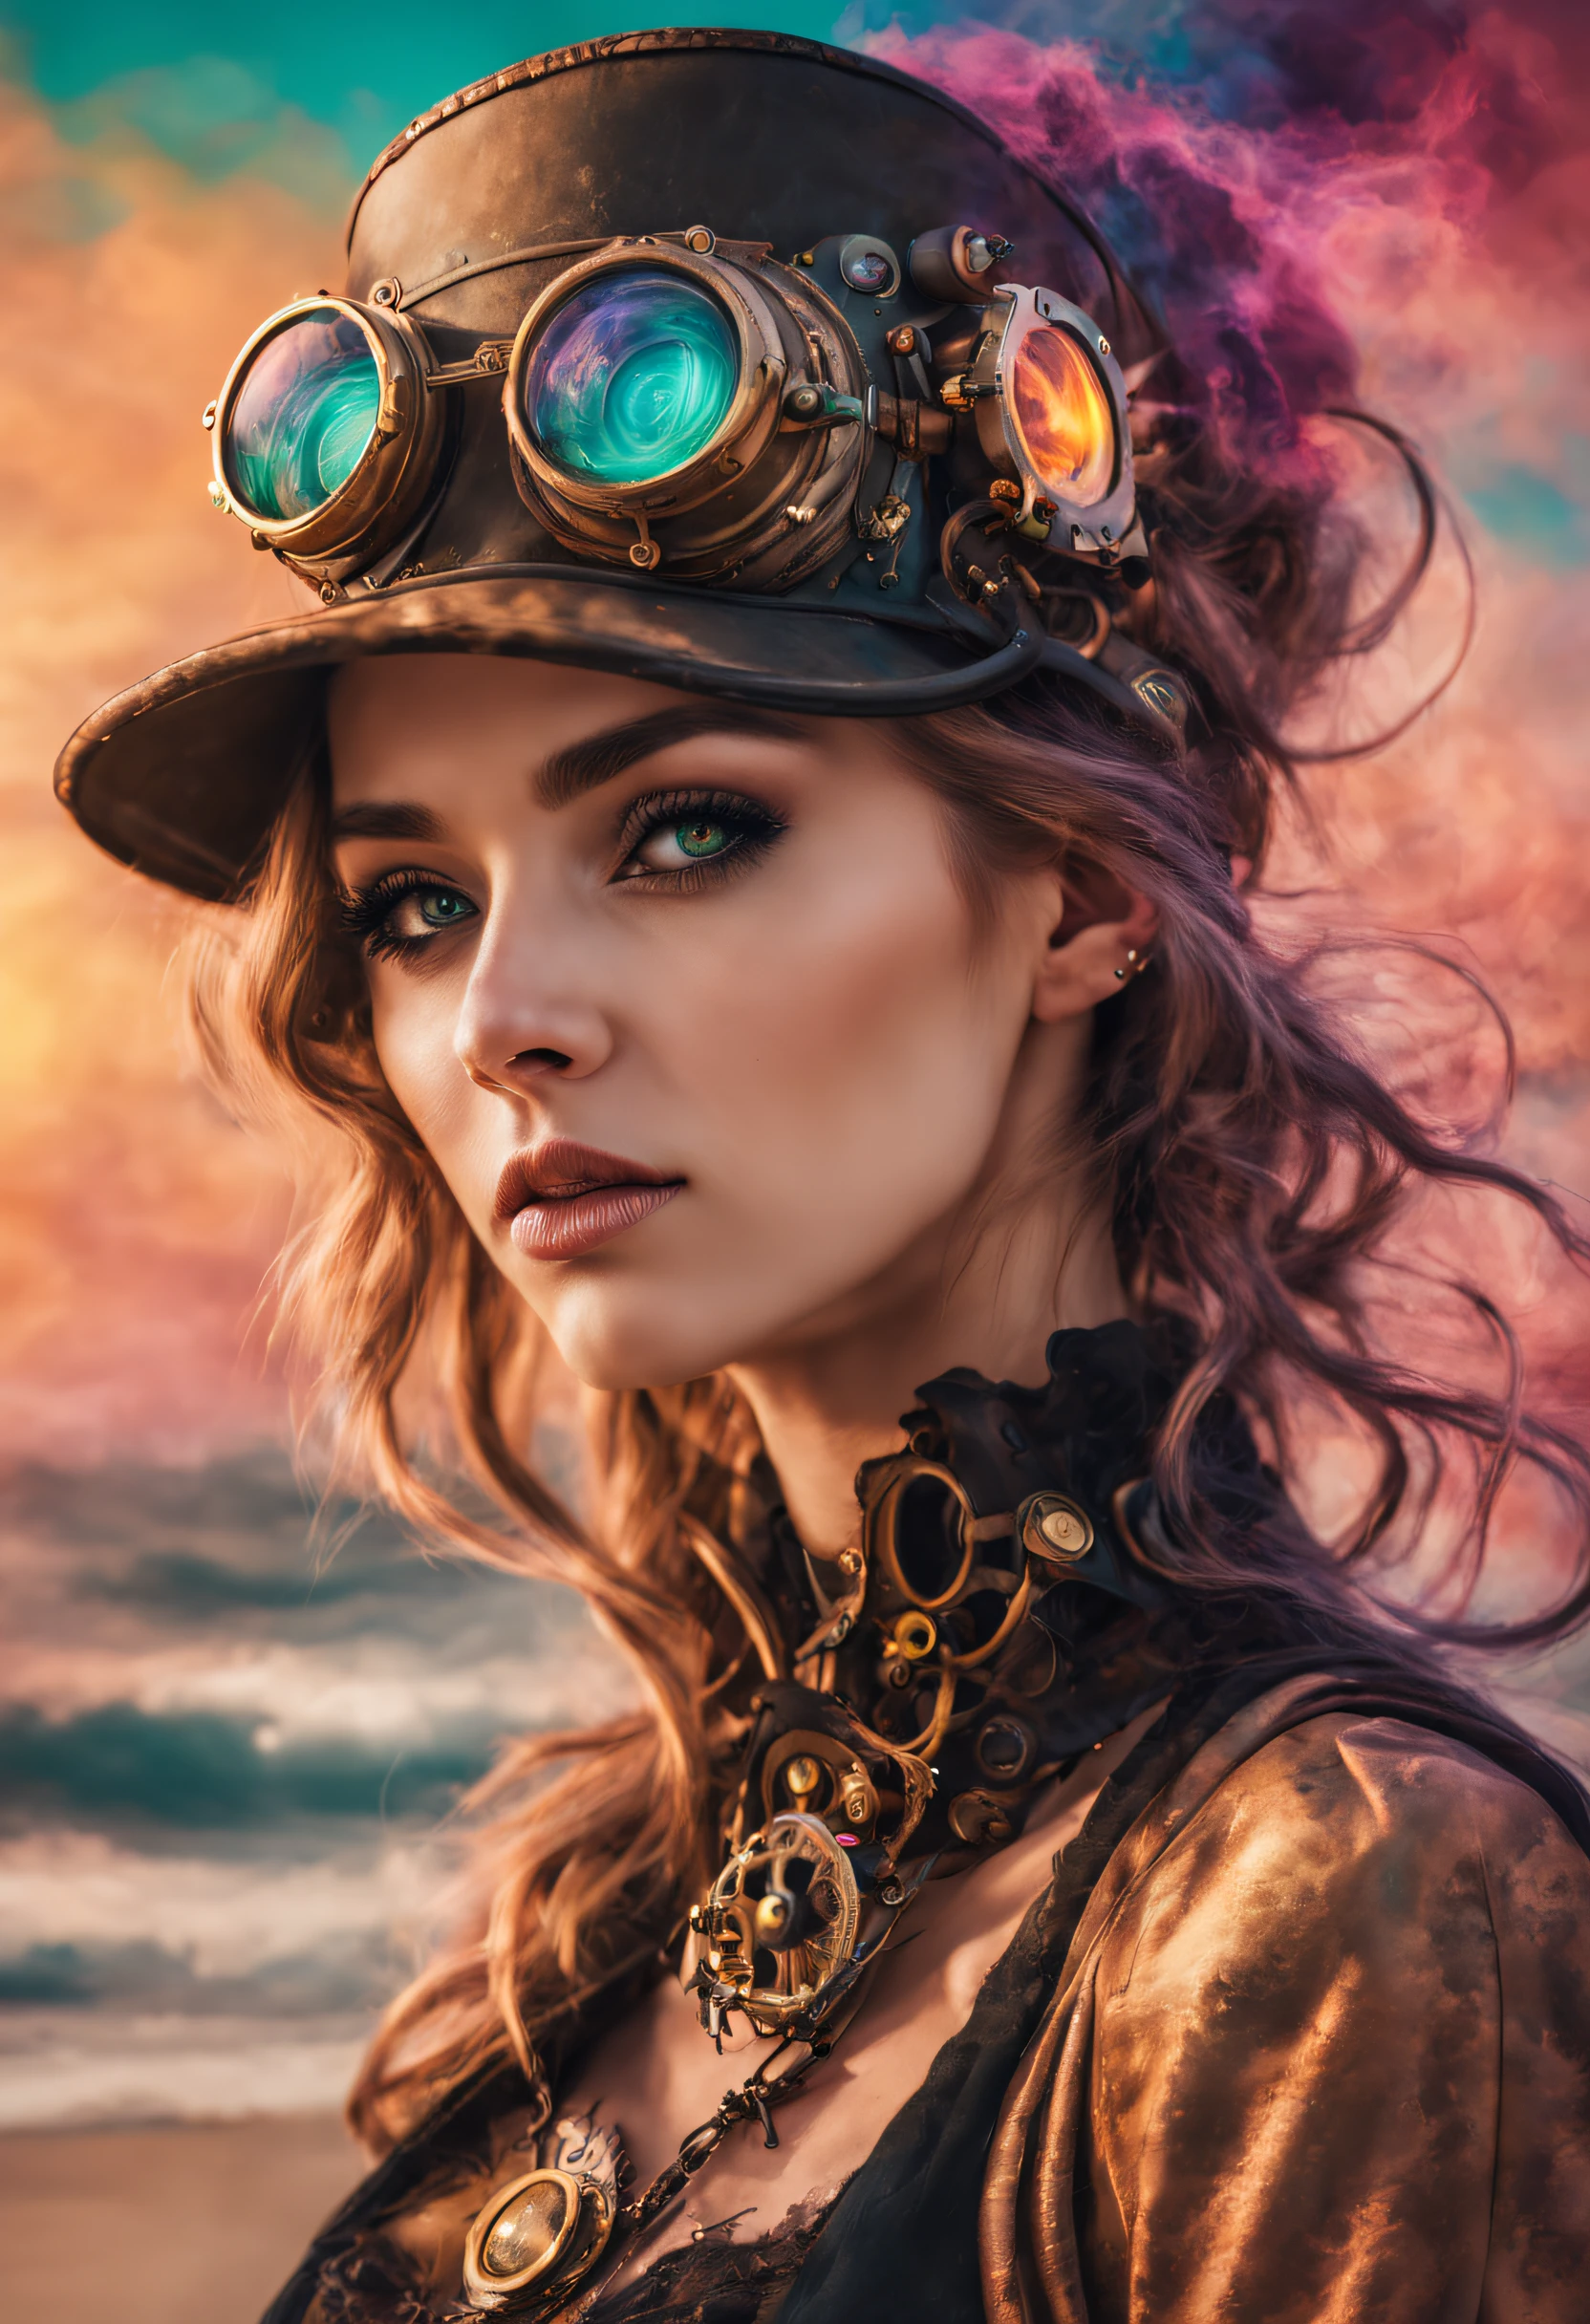 Um lindo retrato de mulheres steampunk e psicodélicas com lindas cores e no fundo explosões de areia de cores misturadas